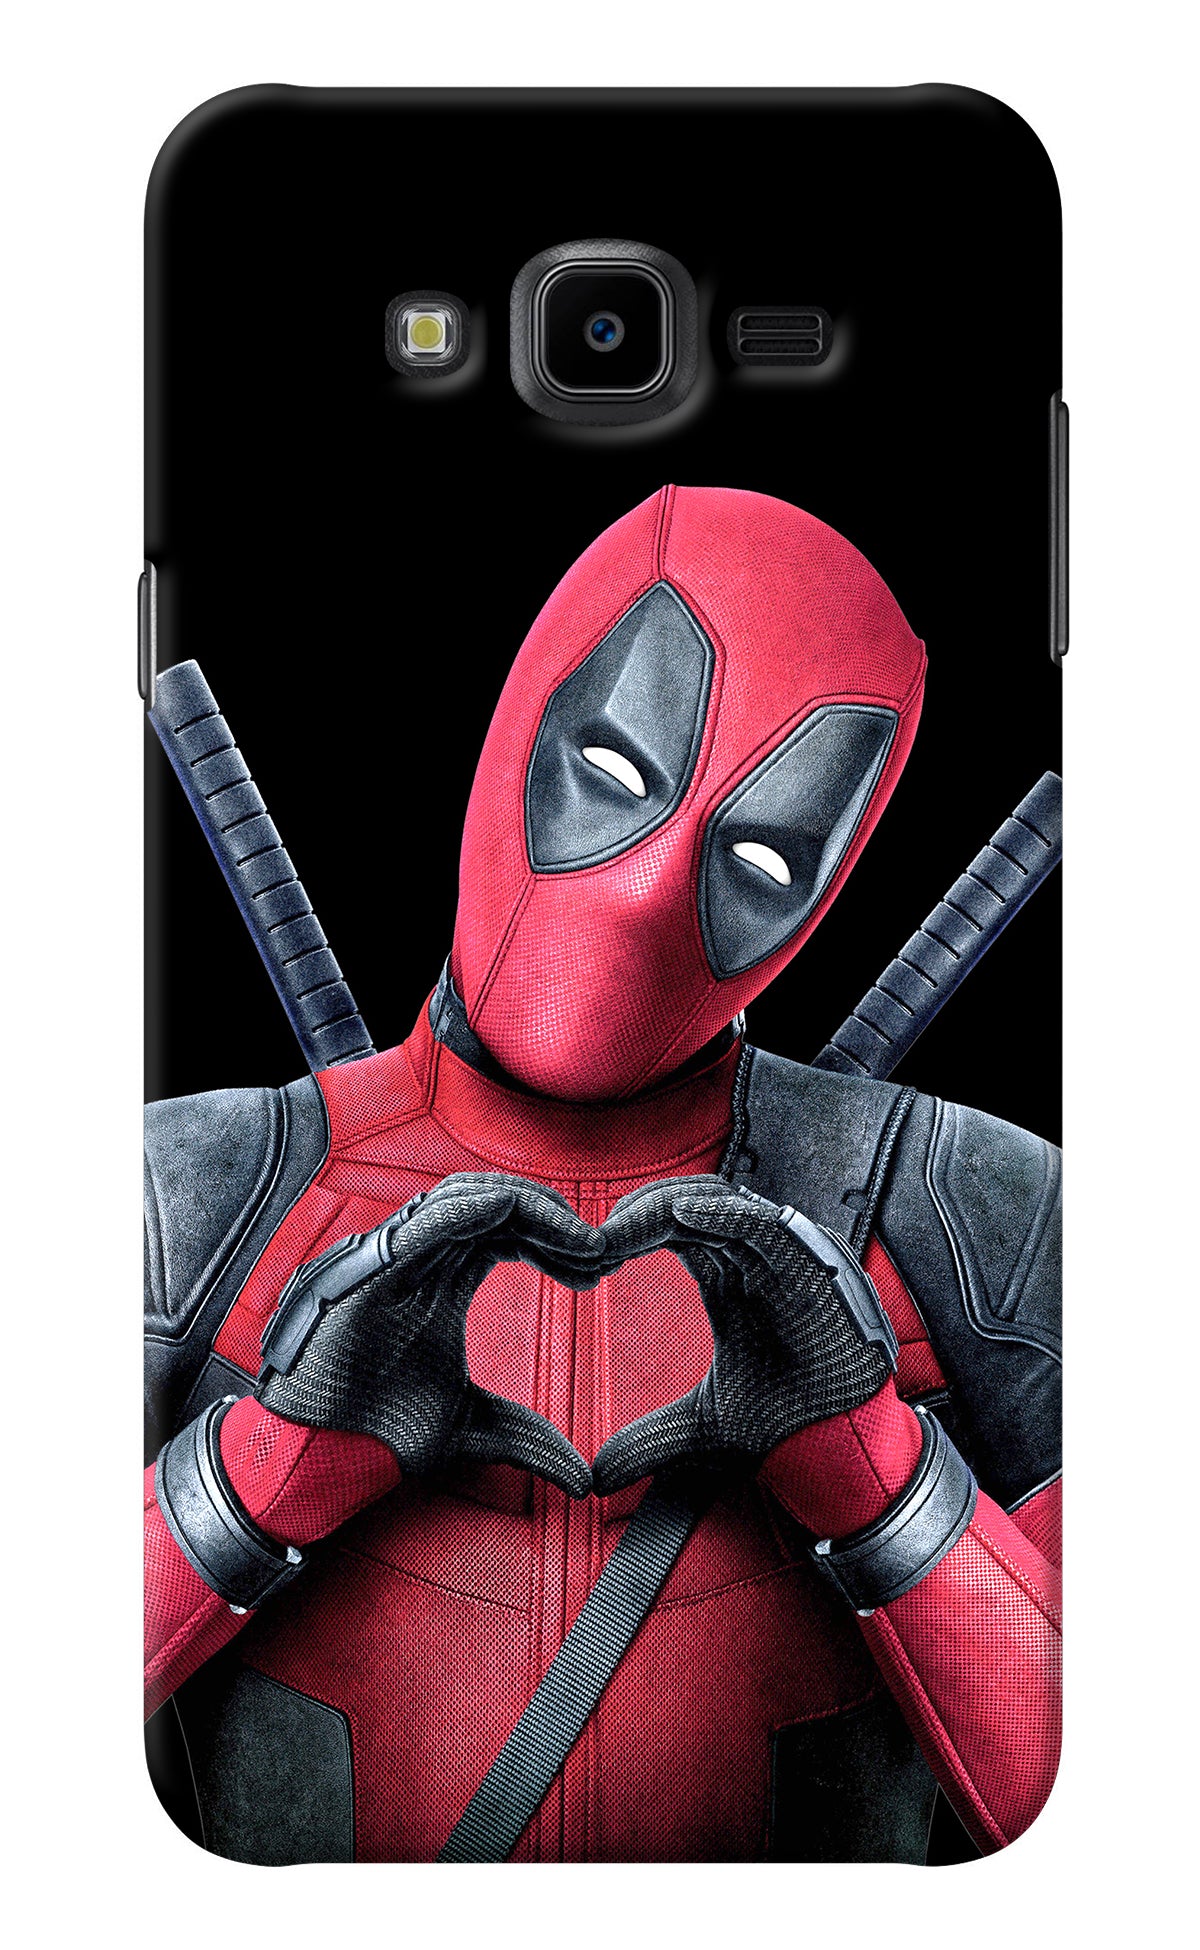 Deadpool Samsung J7 Nxt Back Cover